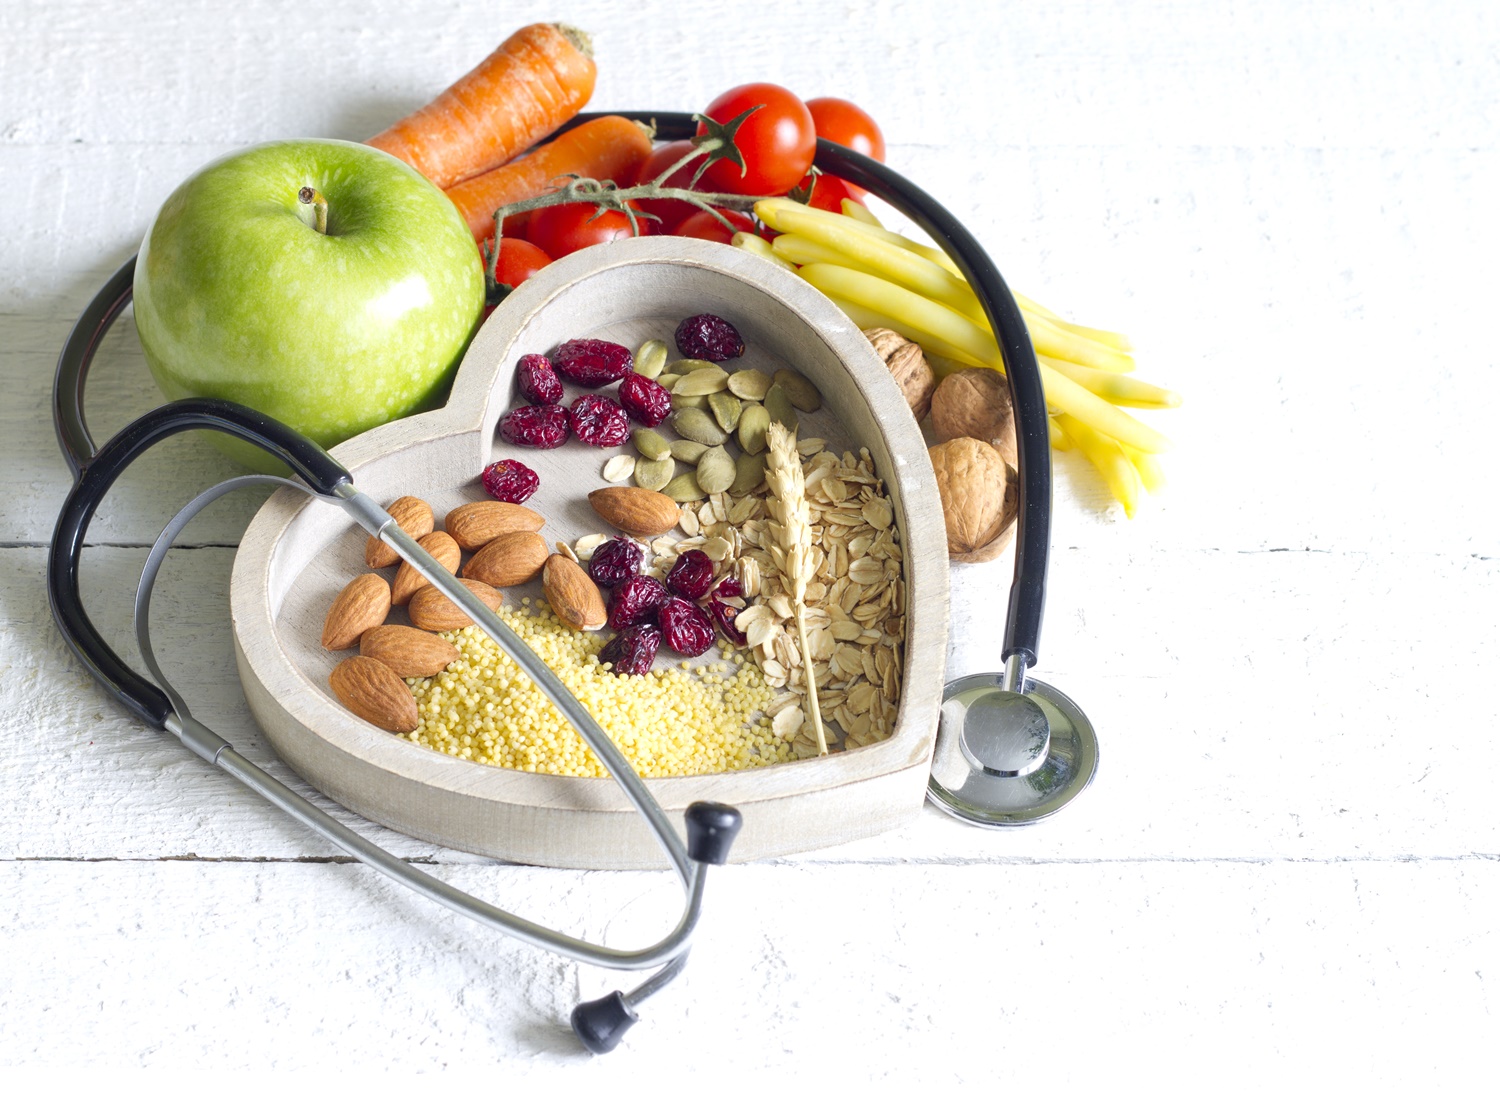 ziarna w naczyniu o kształcie serca, warzywa, jabłko i stetoskop dookoła